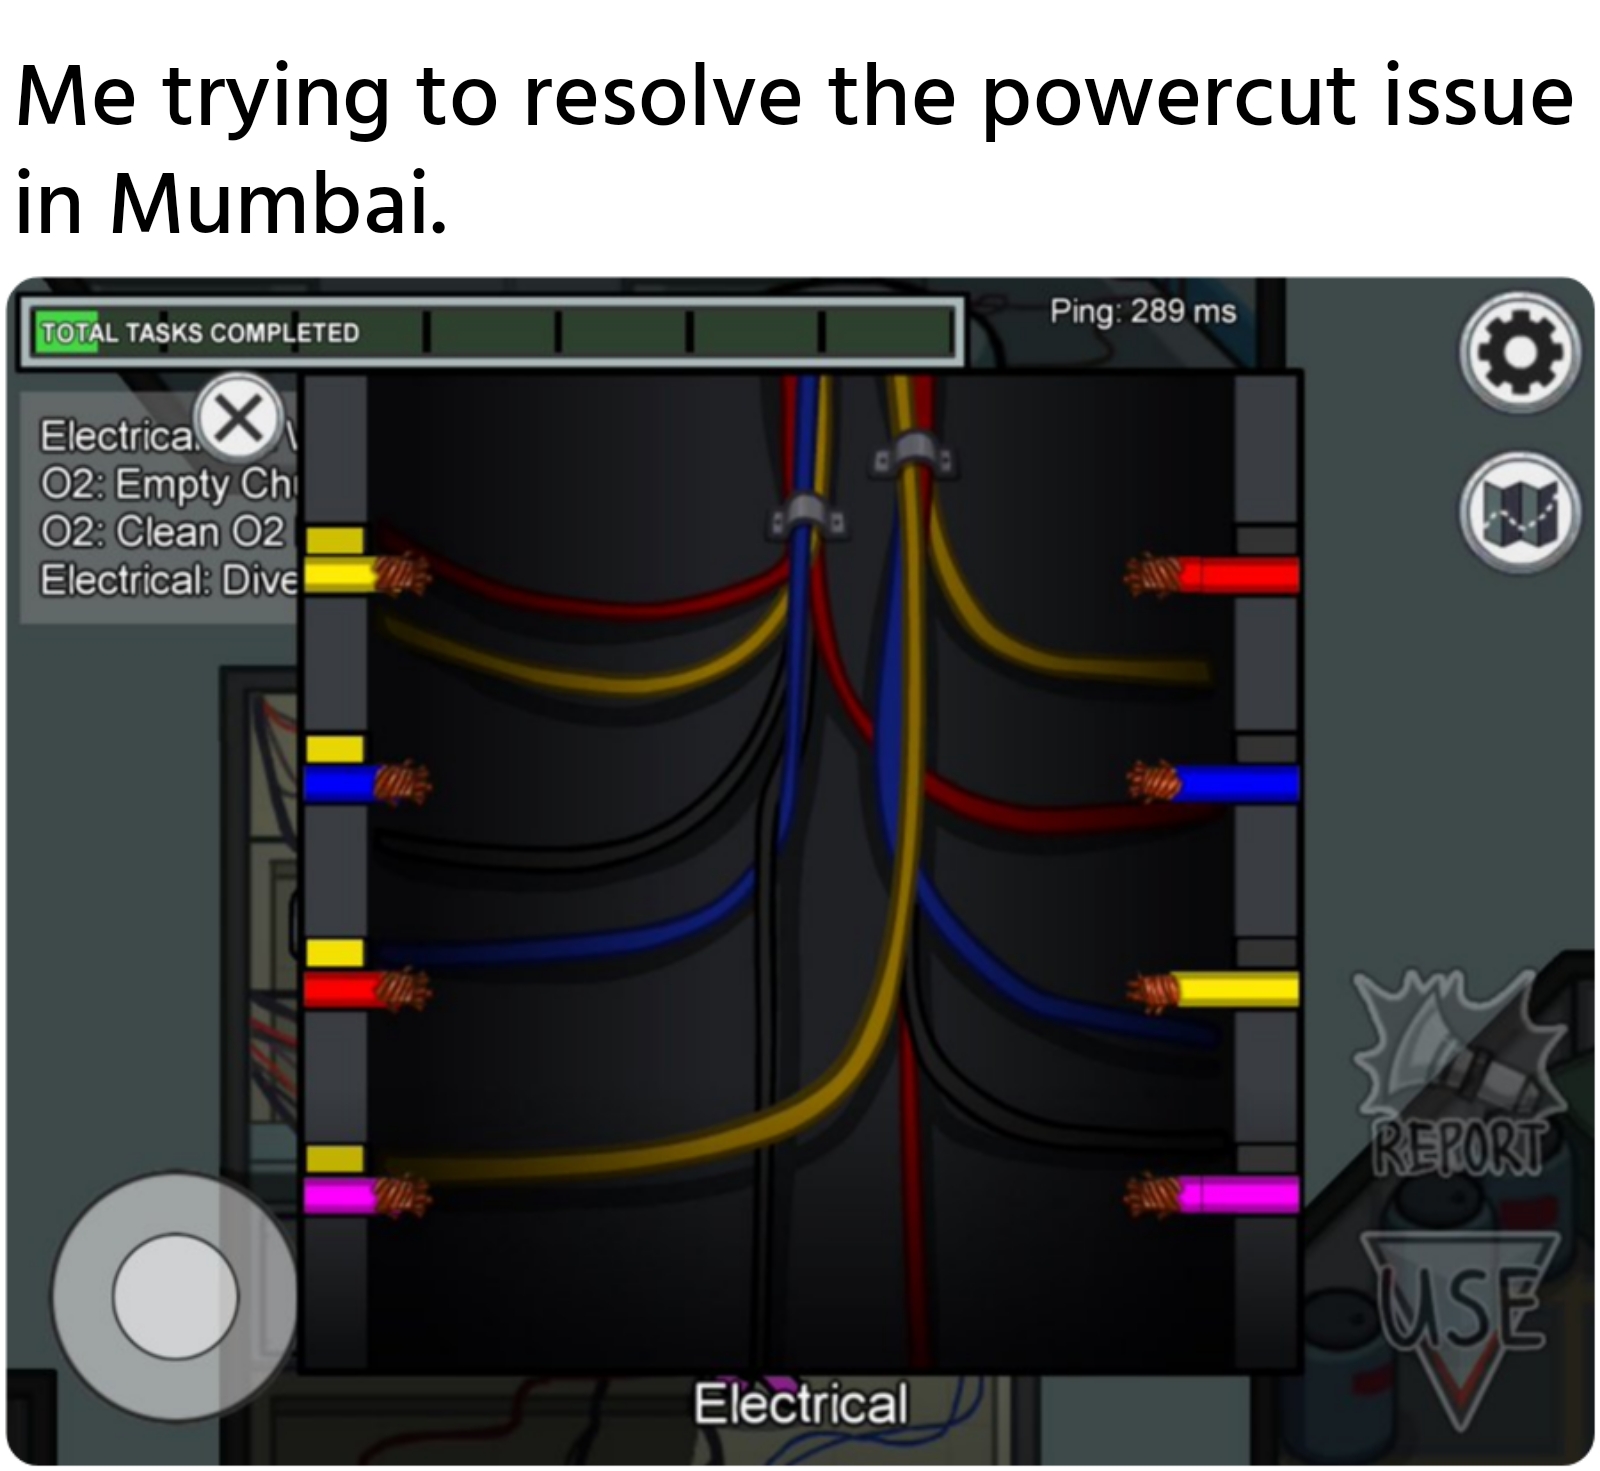 Me trying to resolve the powercut issue in Mumbai meme.jpg